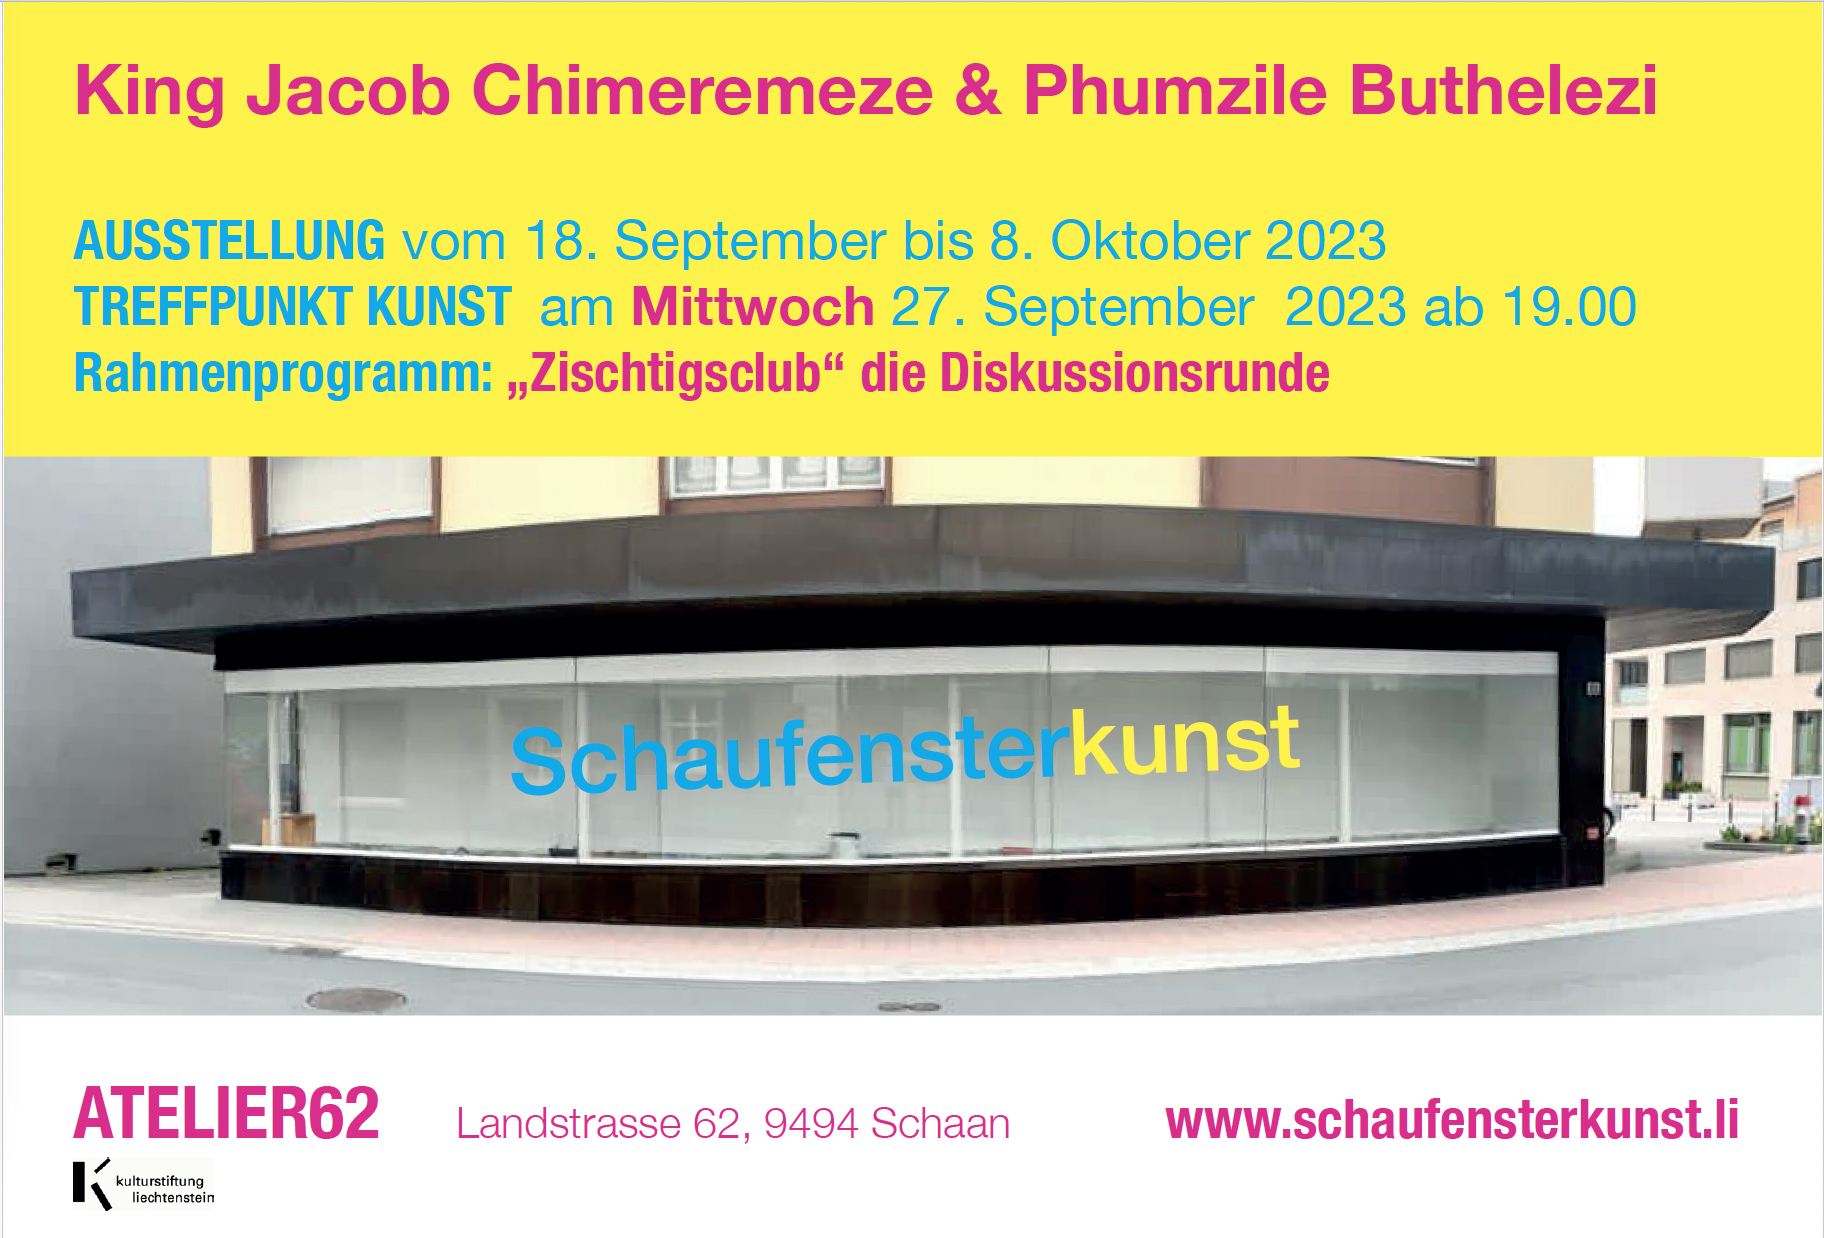 Ursula Wolf, King Jacob Chimeremeze & Phumzile Buthelezi: Treffpunkt Kunst